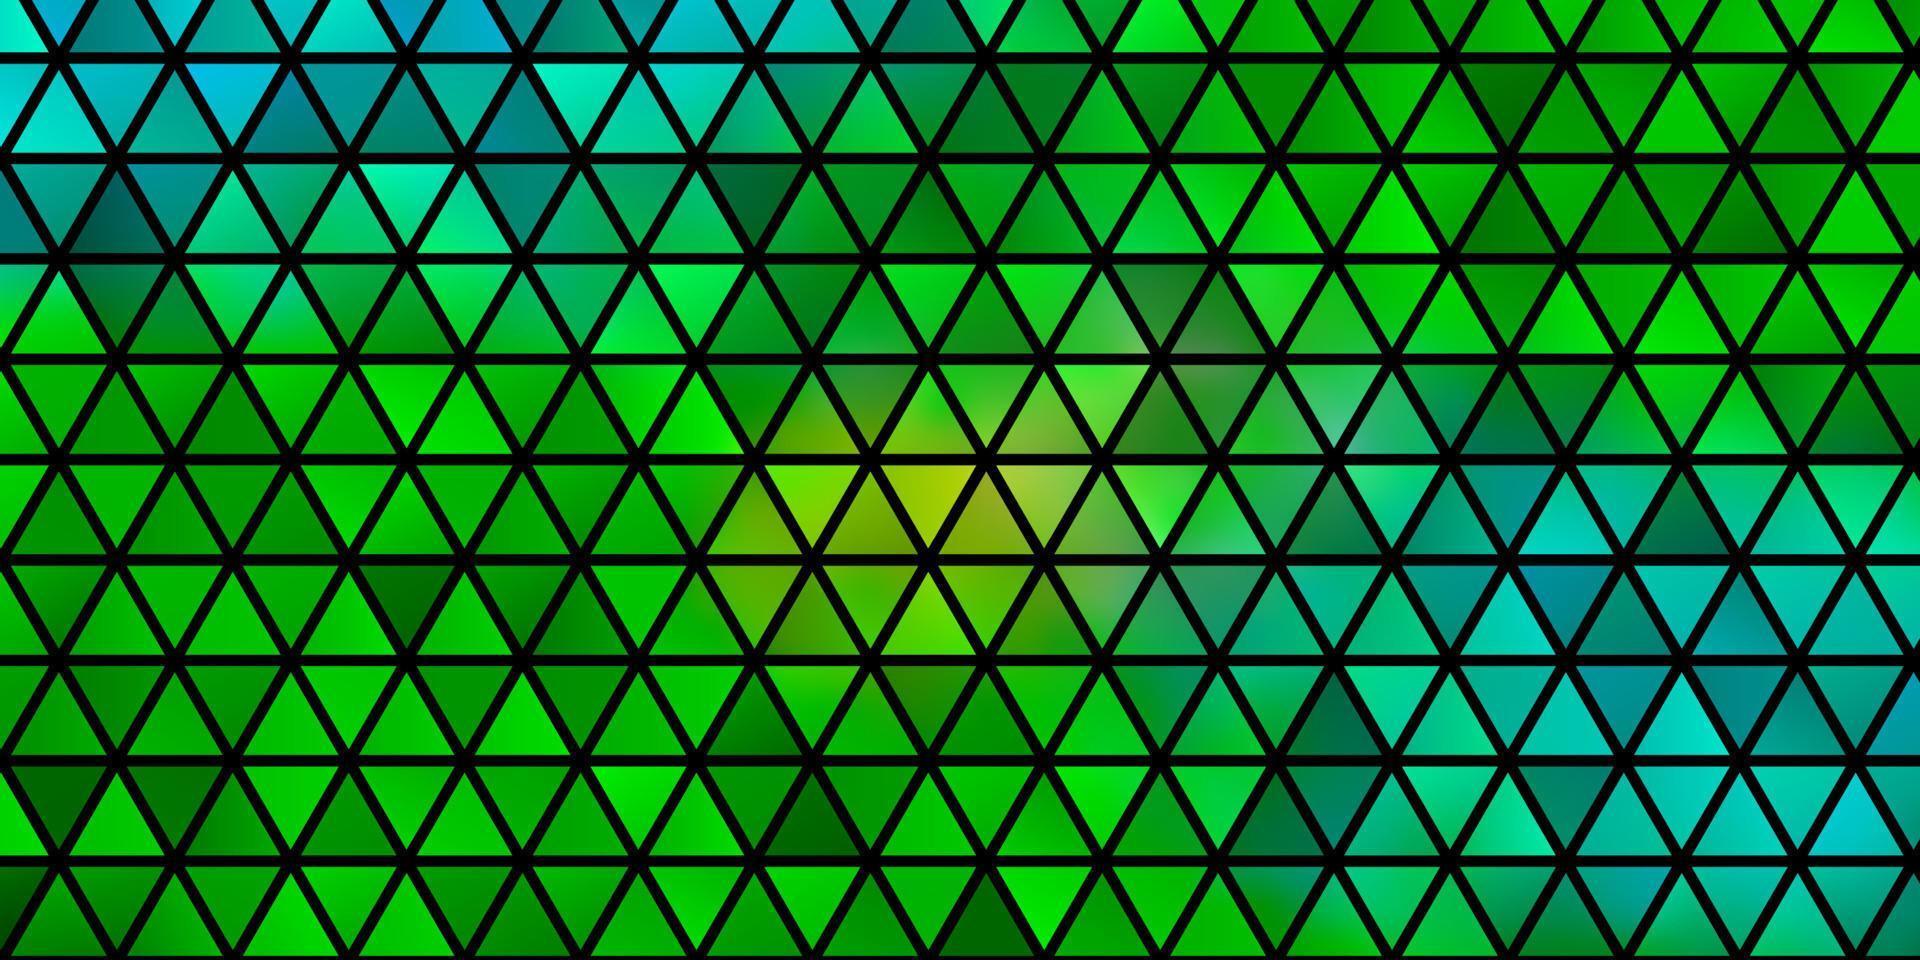 sfondo vettoriale azzurro, verde con triangoli.